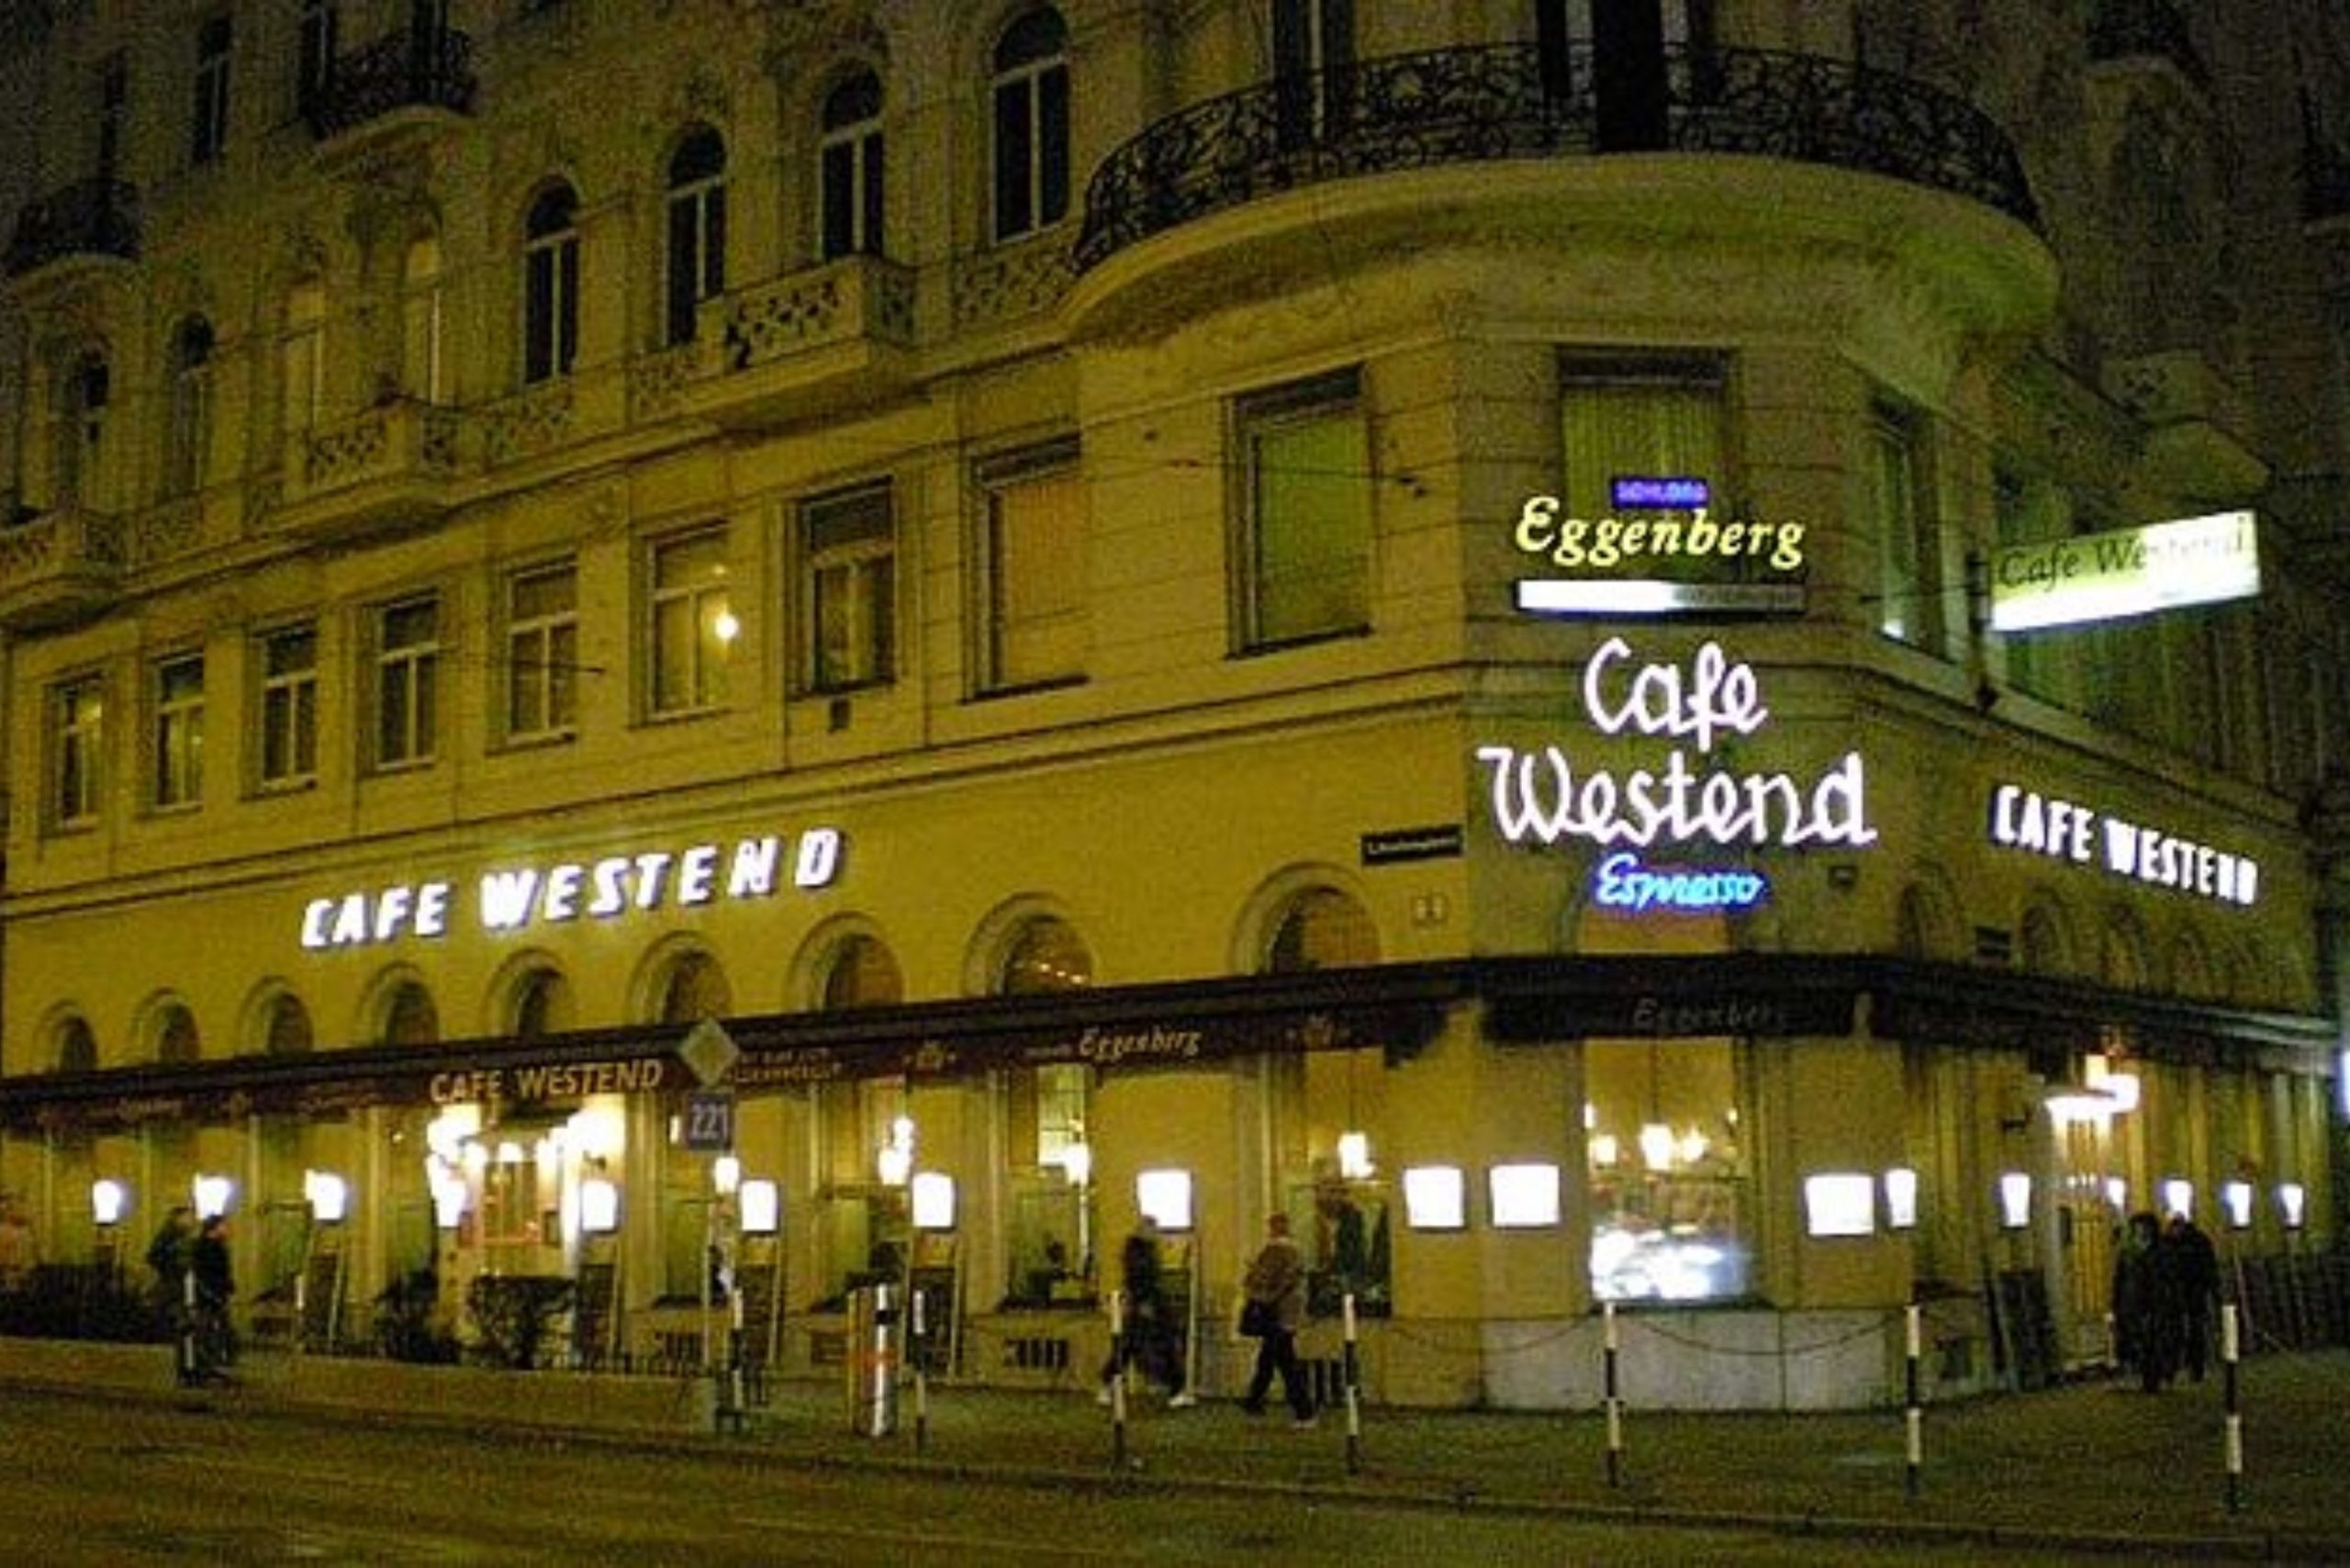 West End Café